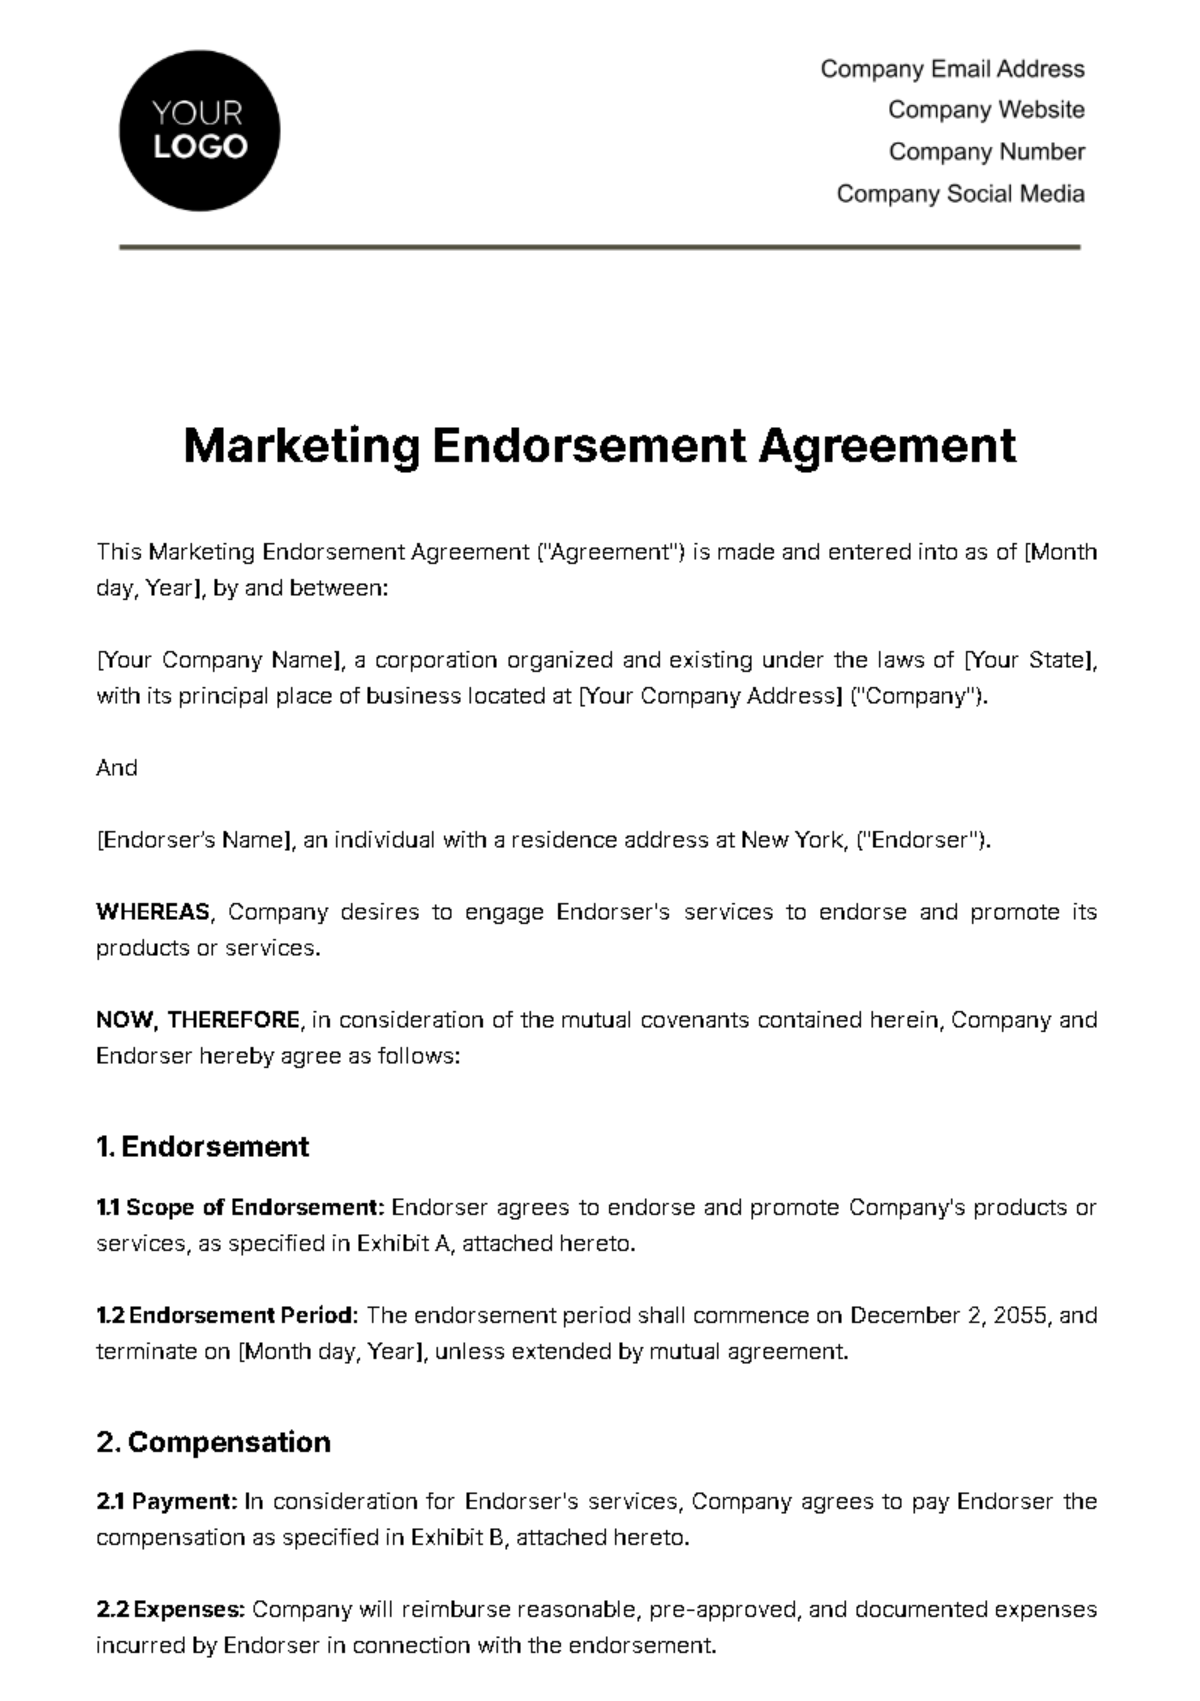 Marketing Endorsement Agreement Template